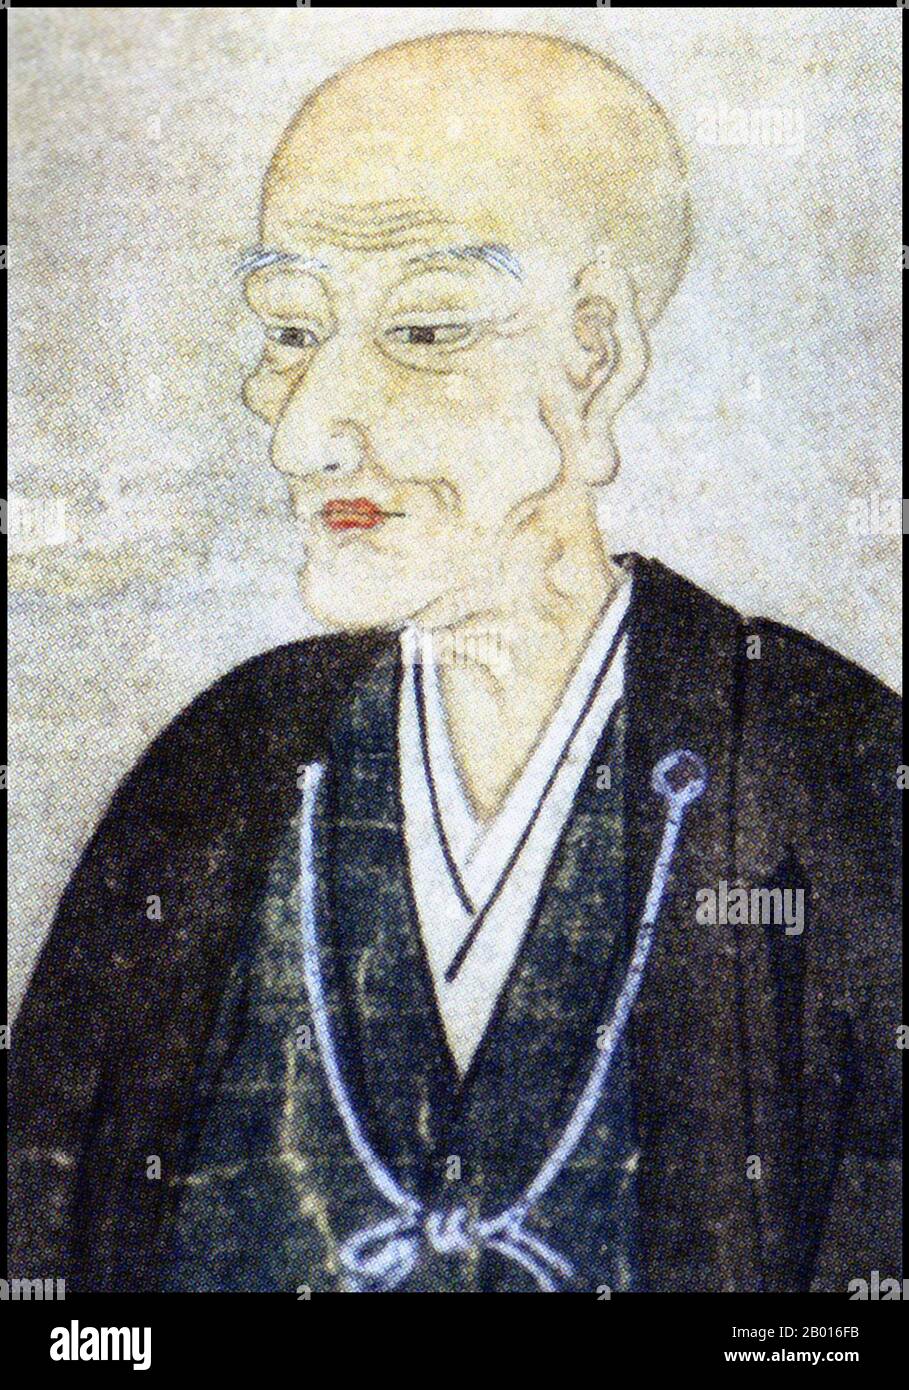 Giappone: Matsudaira Harusato (1751-1818), Daimyo di Matsue Domain (r.1767-1806). Pittura a spirale pensile, inizio del 19 ° secolo. Matsudaira Harusato, conosciuto anche da Matsudaira Fumai, era un daimyo giapponese del periodo Edo. Quando succedette a suo padre come signore, Matsue era stato ridotto a uno stato di povertà, qualcosa che aveva iniziato a invertire rapidamente. Le sue riforme furono rapidamente realizzate e la produzione dei principali prodotti del feudo aumentò. Matsudaira era un sostenitore del chanoyu, la cerimonia giapponese del tè, e scrisse trattati al riguardo. Divenne un maestro del tè con il nome di Fumai. Foto Stock